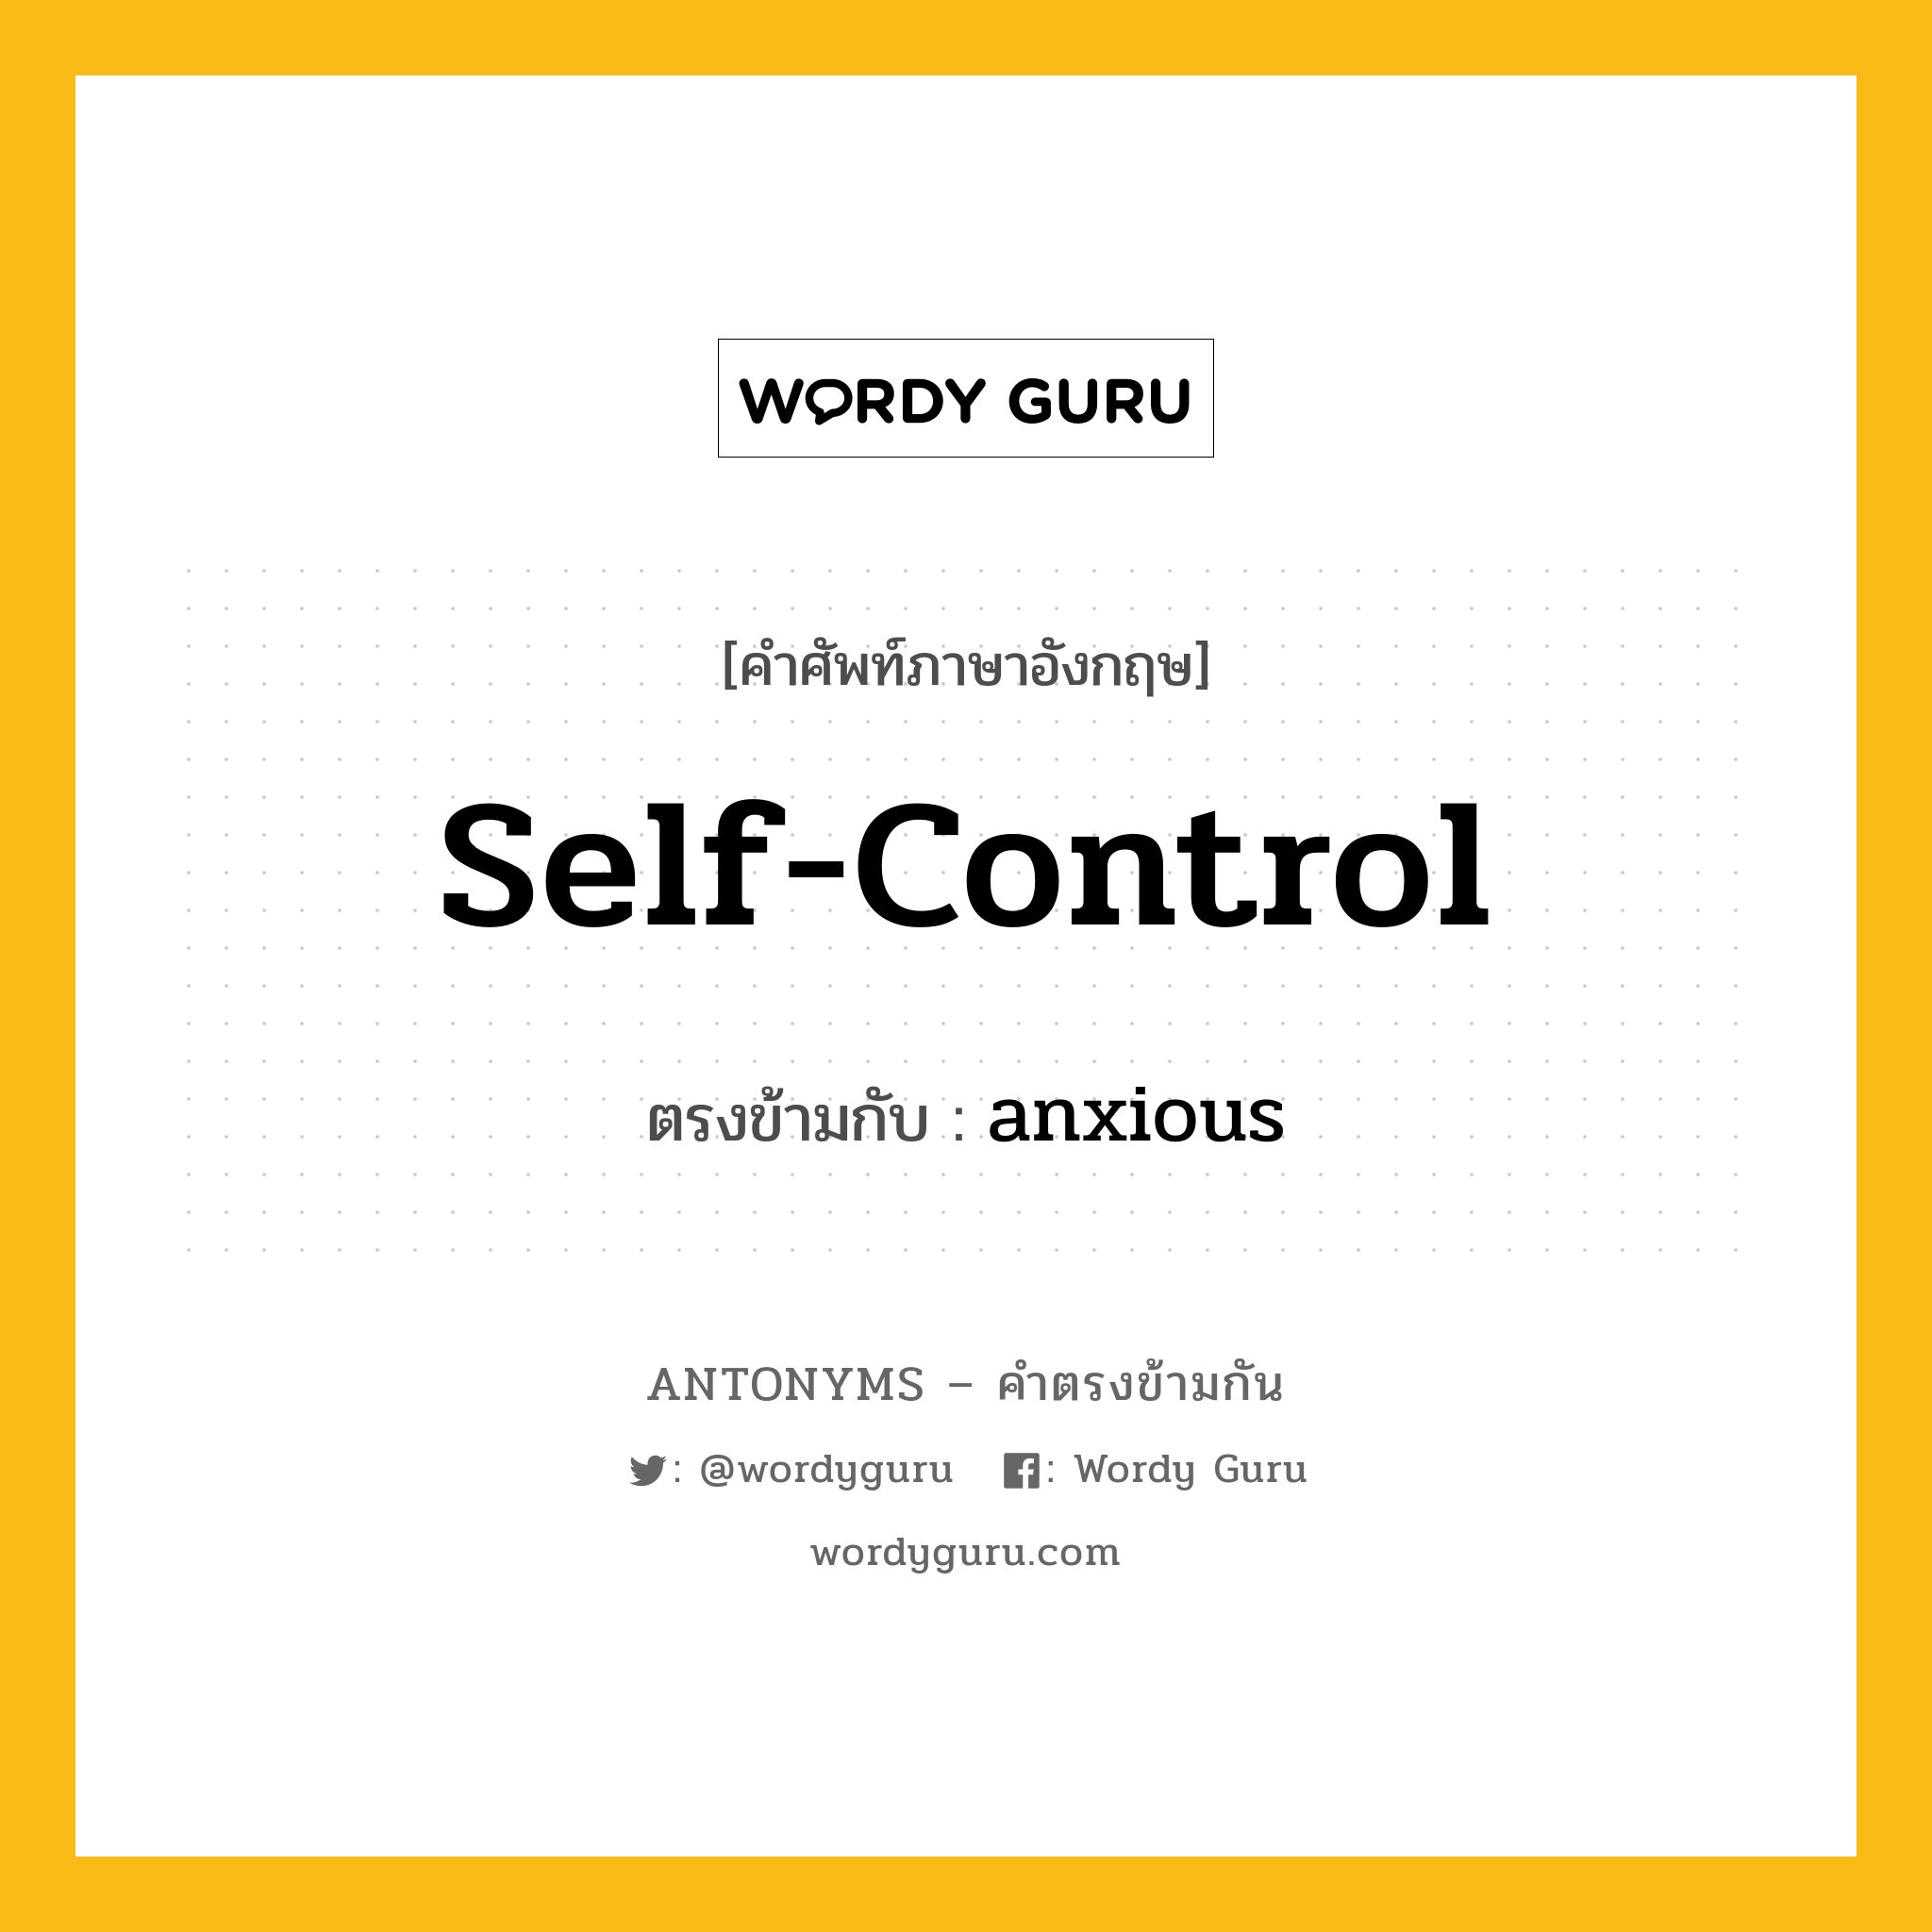 self-control เป็นคำตรงข้ามกับคำไหนบ้าง?, คำศัพท์ภาษาอังกฤษที่มีความหมายตรงข้ามกัน self-control ตรงข้ามกับ anxious หมวด anxious